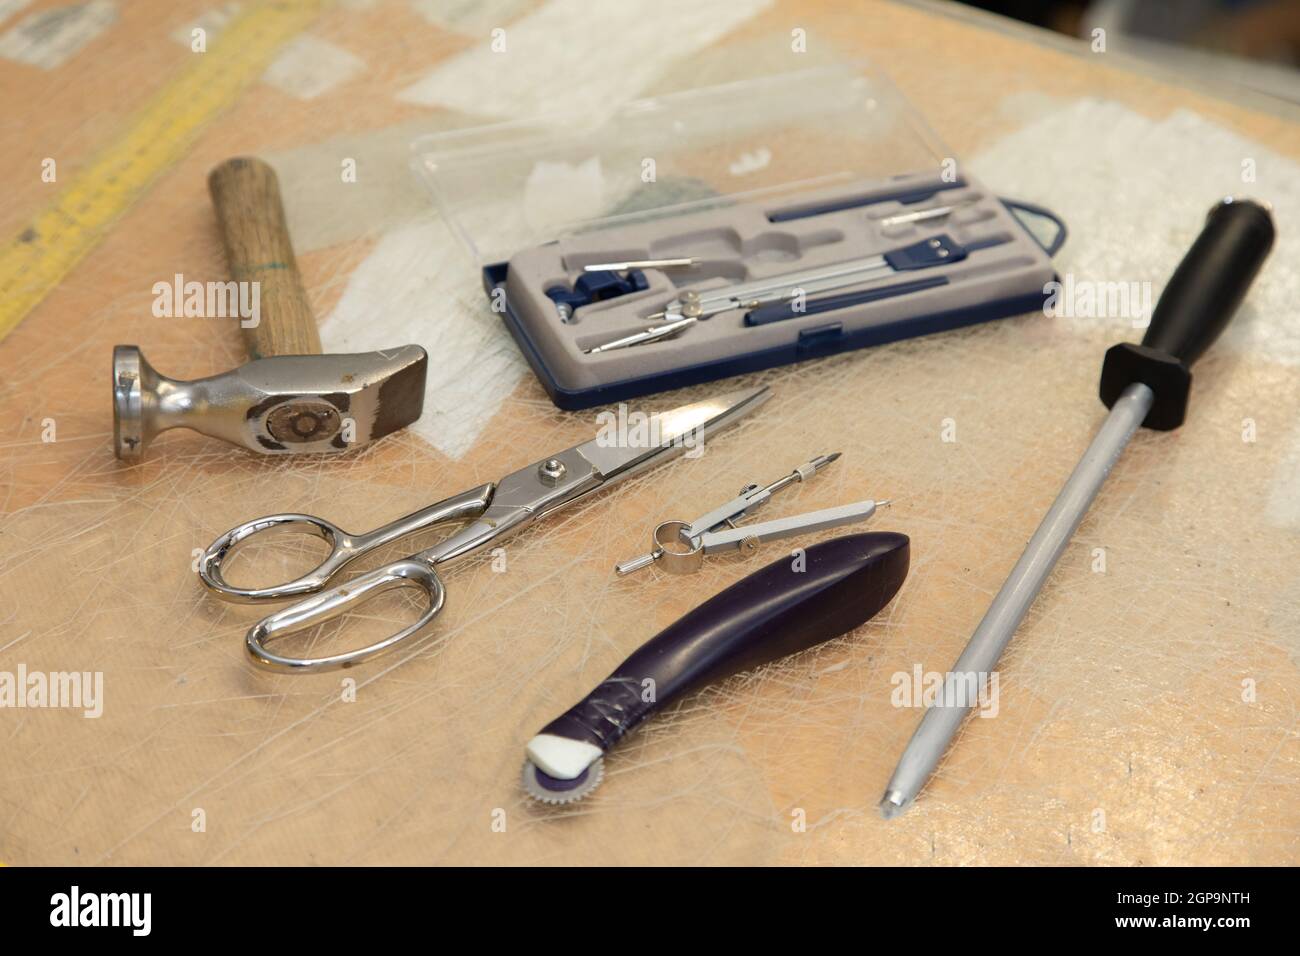 Schuhmacher hämmern Werkzeug, Kreis, Schere und ein Maßband auf einem Schreibtisch. Symbolisch für Handwerker und ihren Arbeitsplatz. Stockfoto